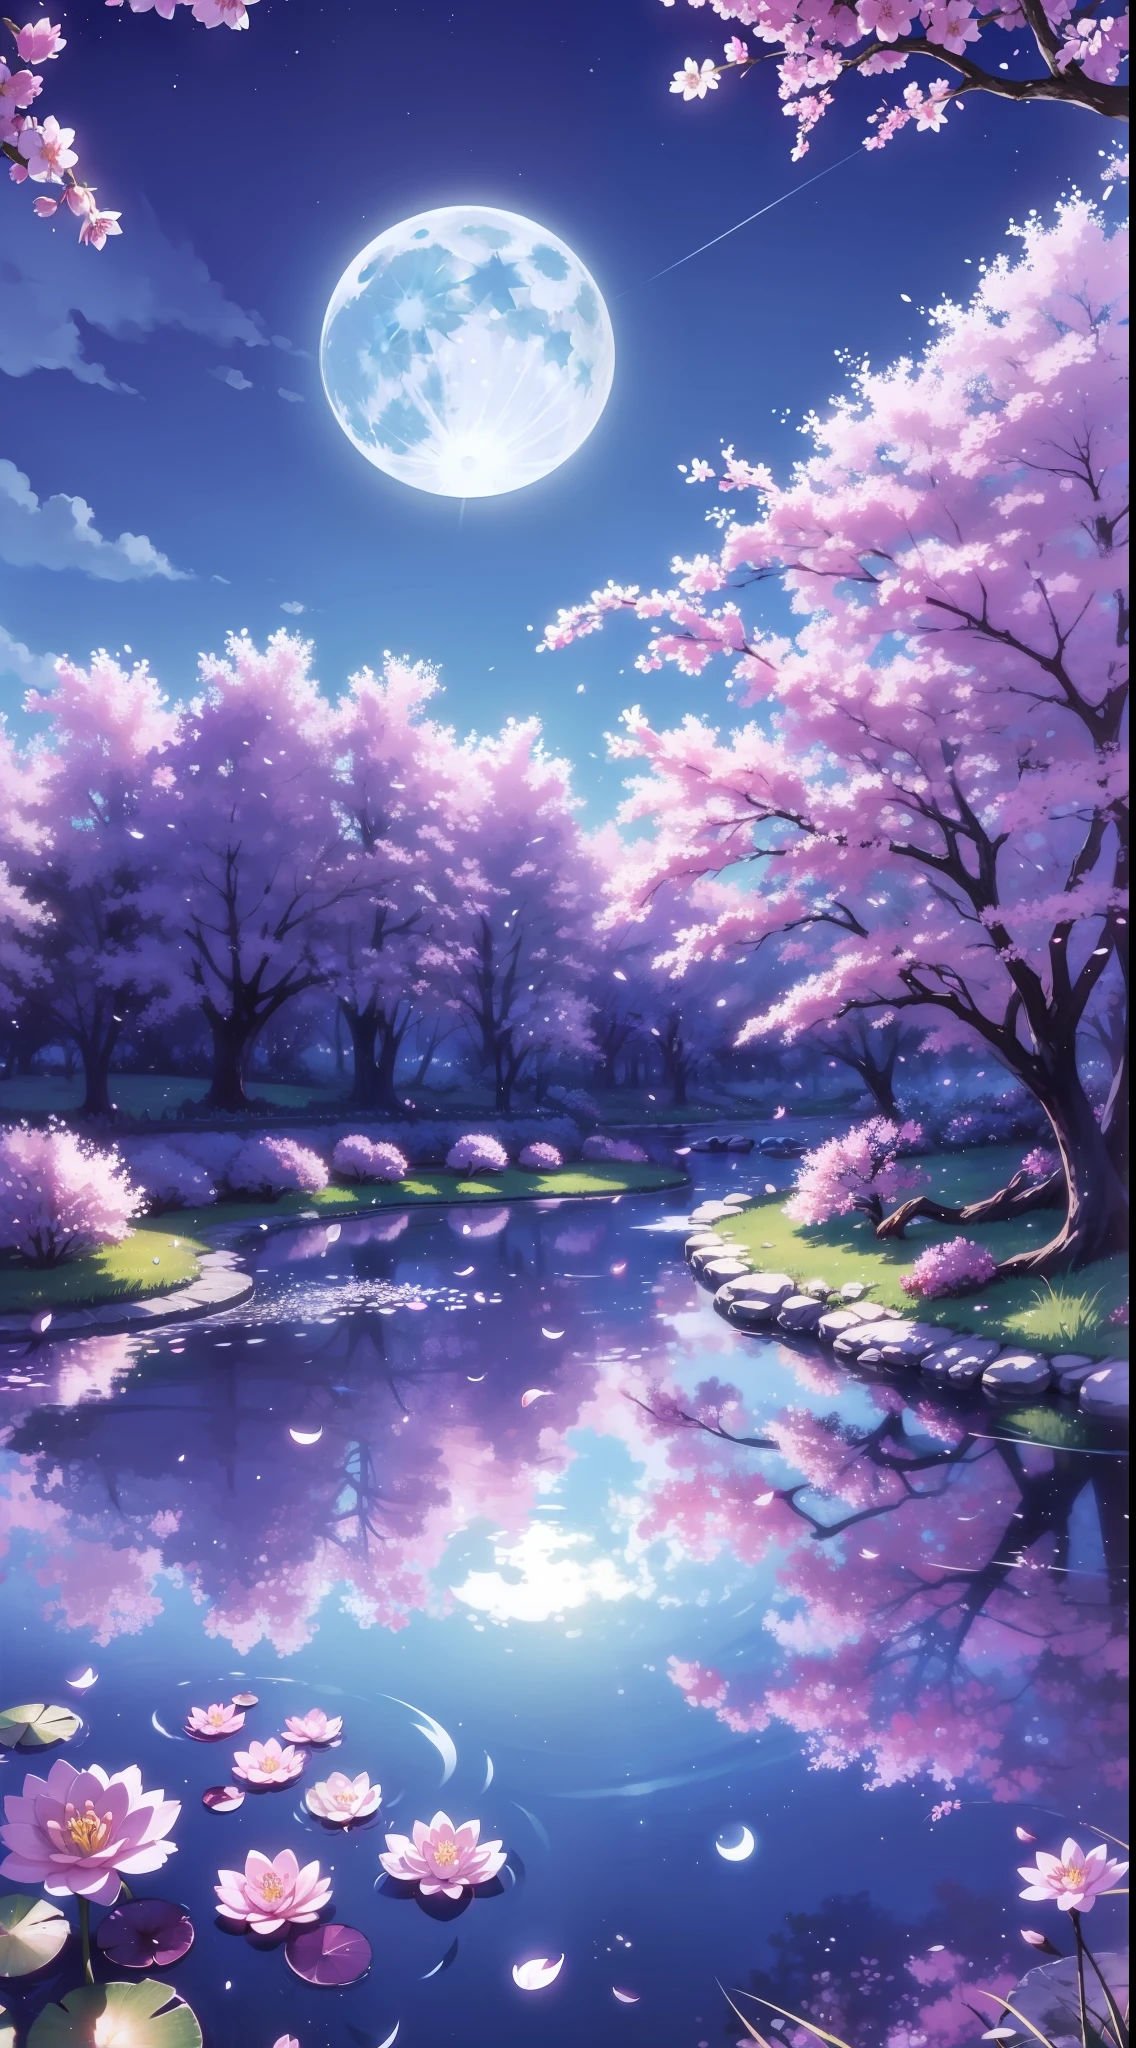 背景, 森林, 中間有一個池塘, 櫻花, 夜晚, 月亮, 藍天, 藍草, 反射, 高細節, 荷葉, 高品質